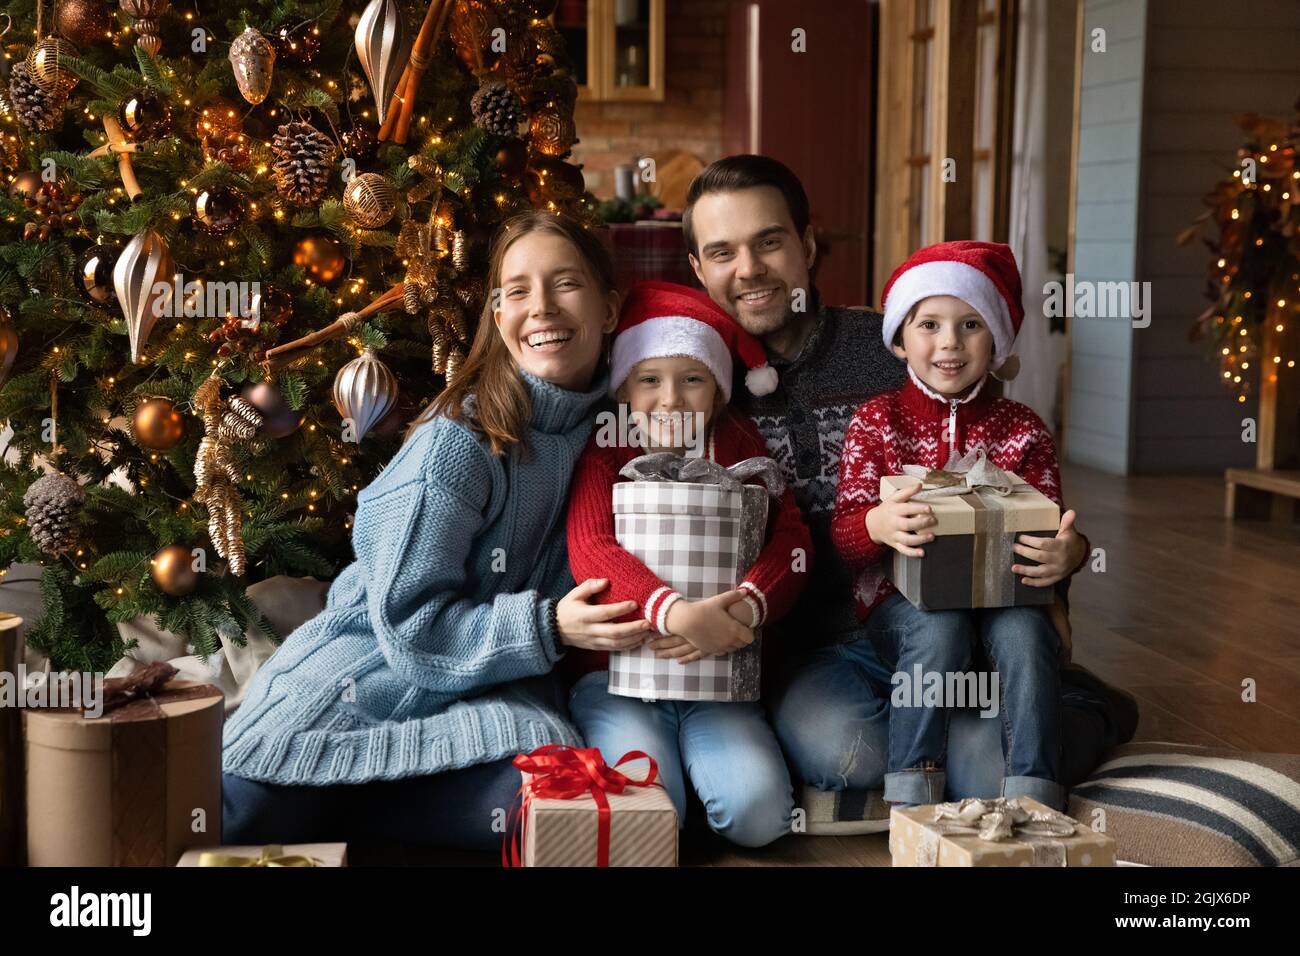 Porträt einer emotionalen glücklichen Familie, die in der Nähe eines geschmückten Weihnachtsbaums sitzt. Stockfoto